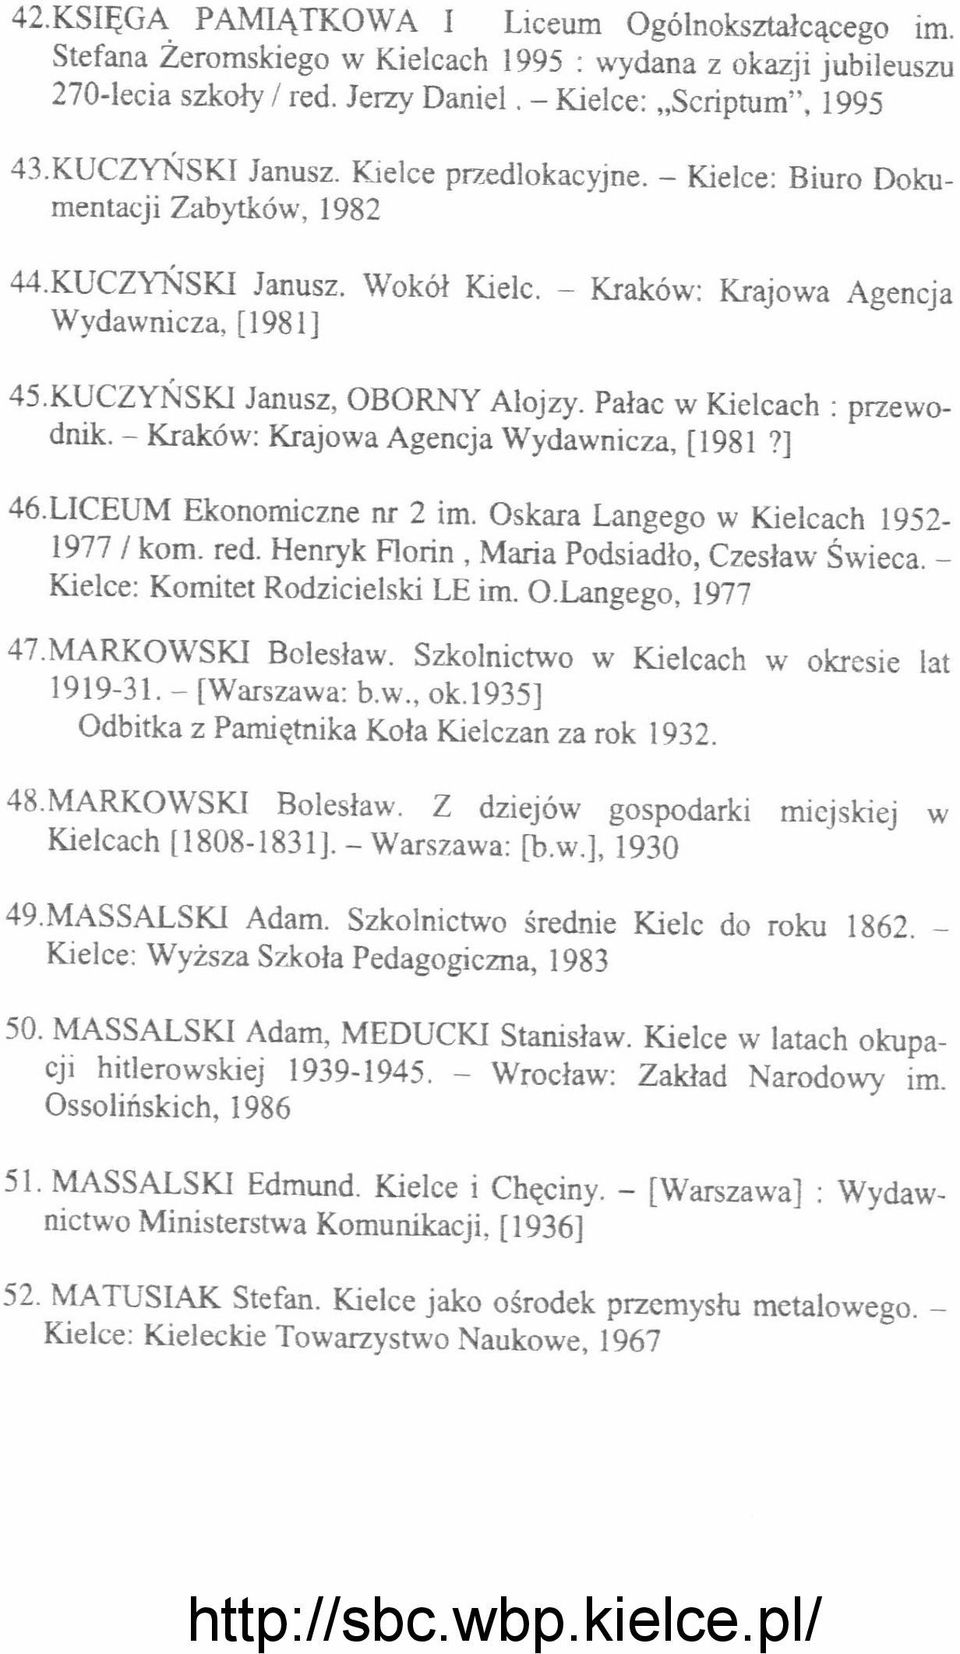 Pałac w Kielcach: przewodnik. - Kraków: Krajowa Agencja Wydawnicza, [1981?] 46.LICEUM Ekonomiczne nr 2 im. Oskara Langego w Kielcach 1952-1977 / kom. red.